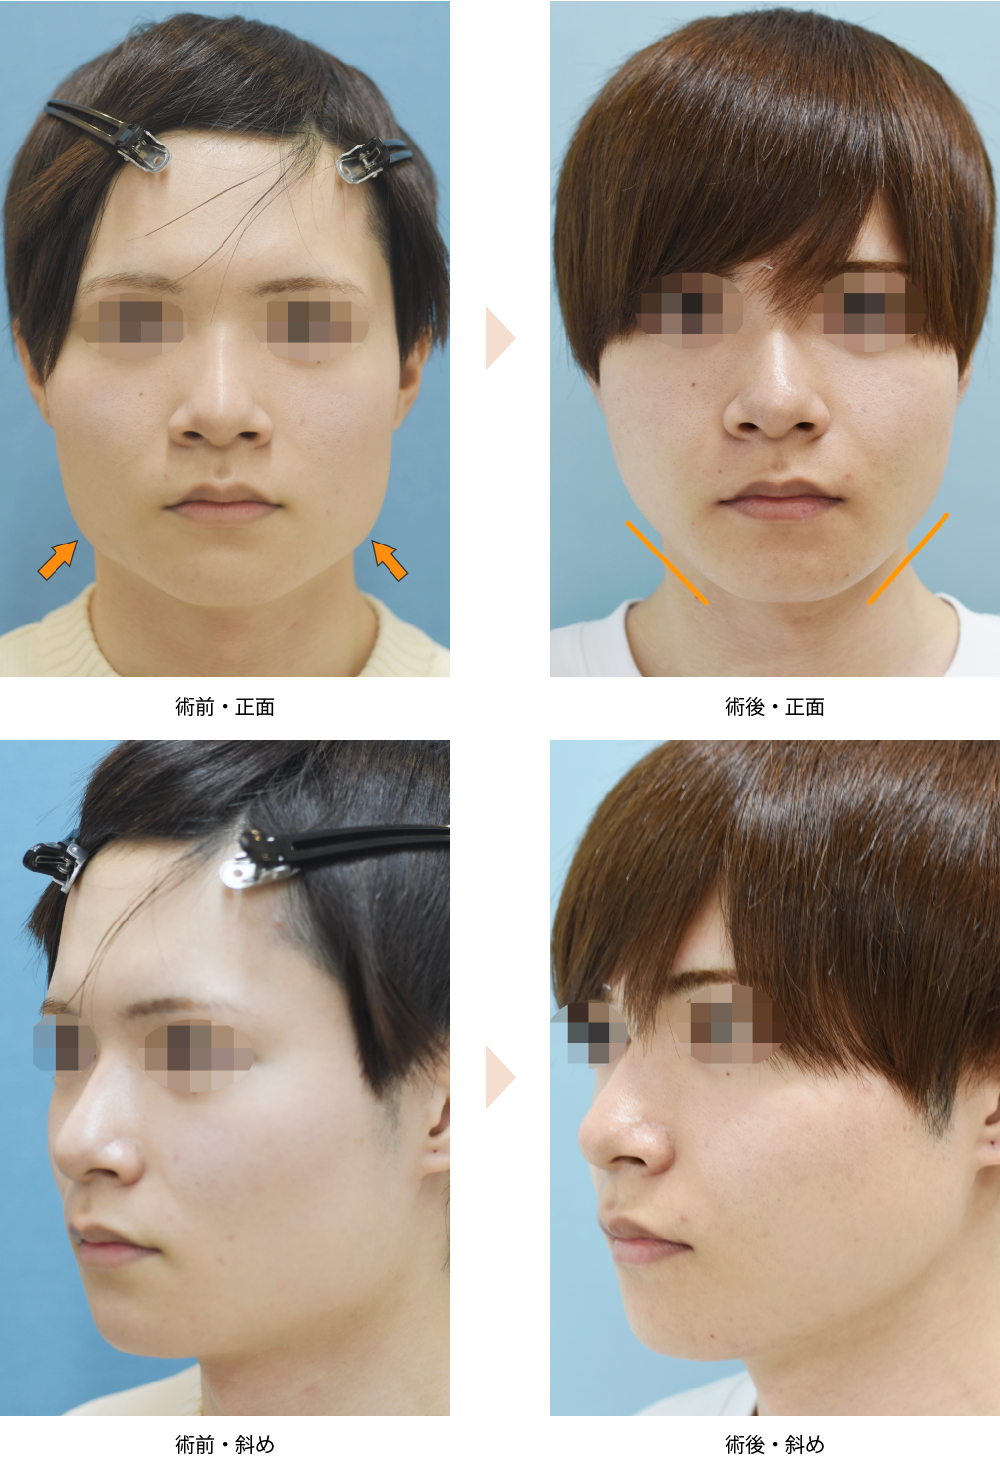 「エラ骨切り・下顎下縁形成術（エラ張りを複合施術で改善）」の症例写真・ビフォーアフター